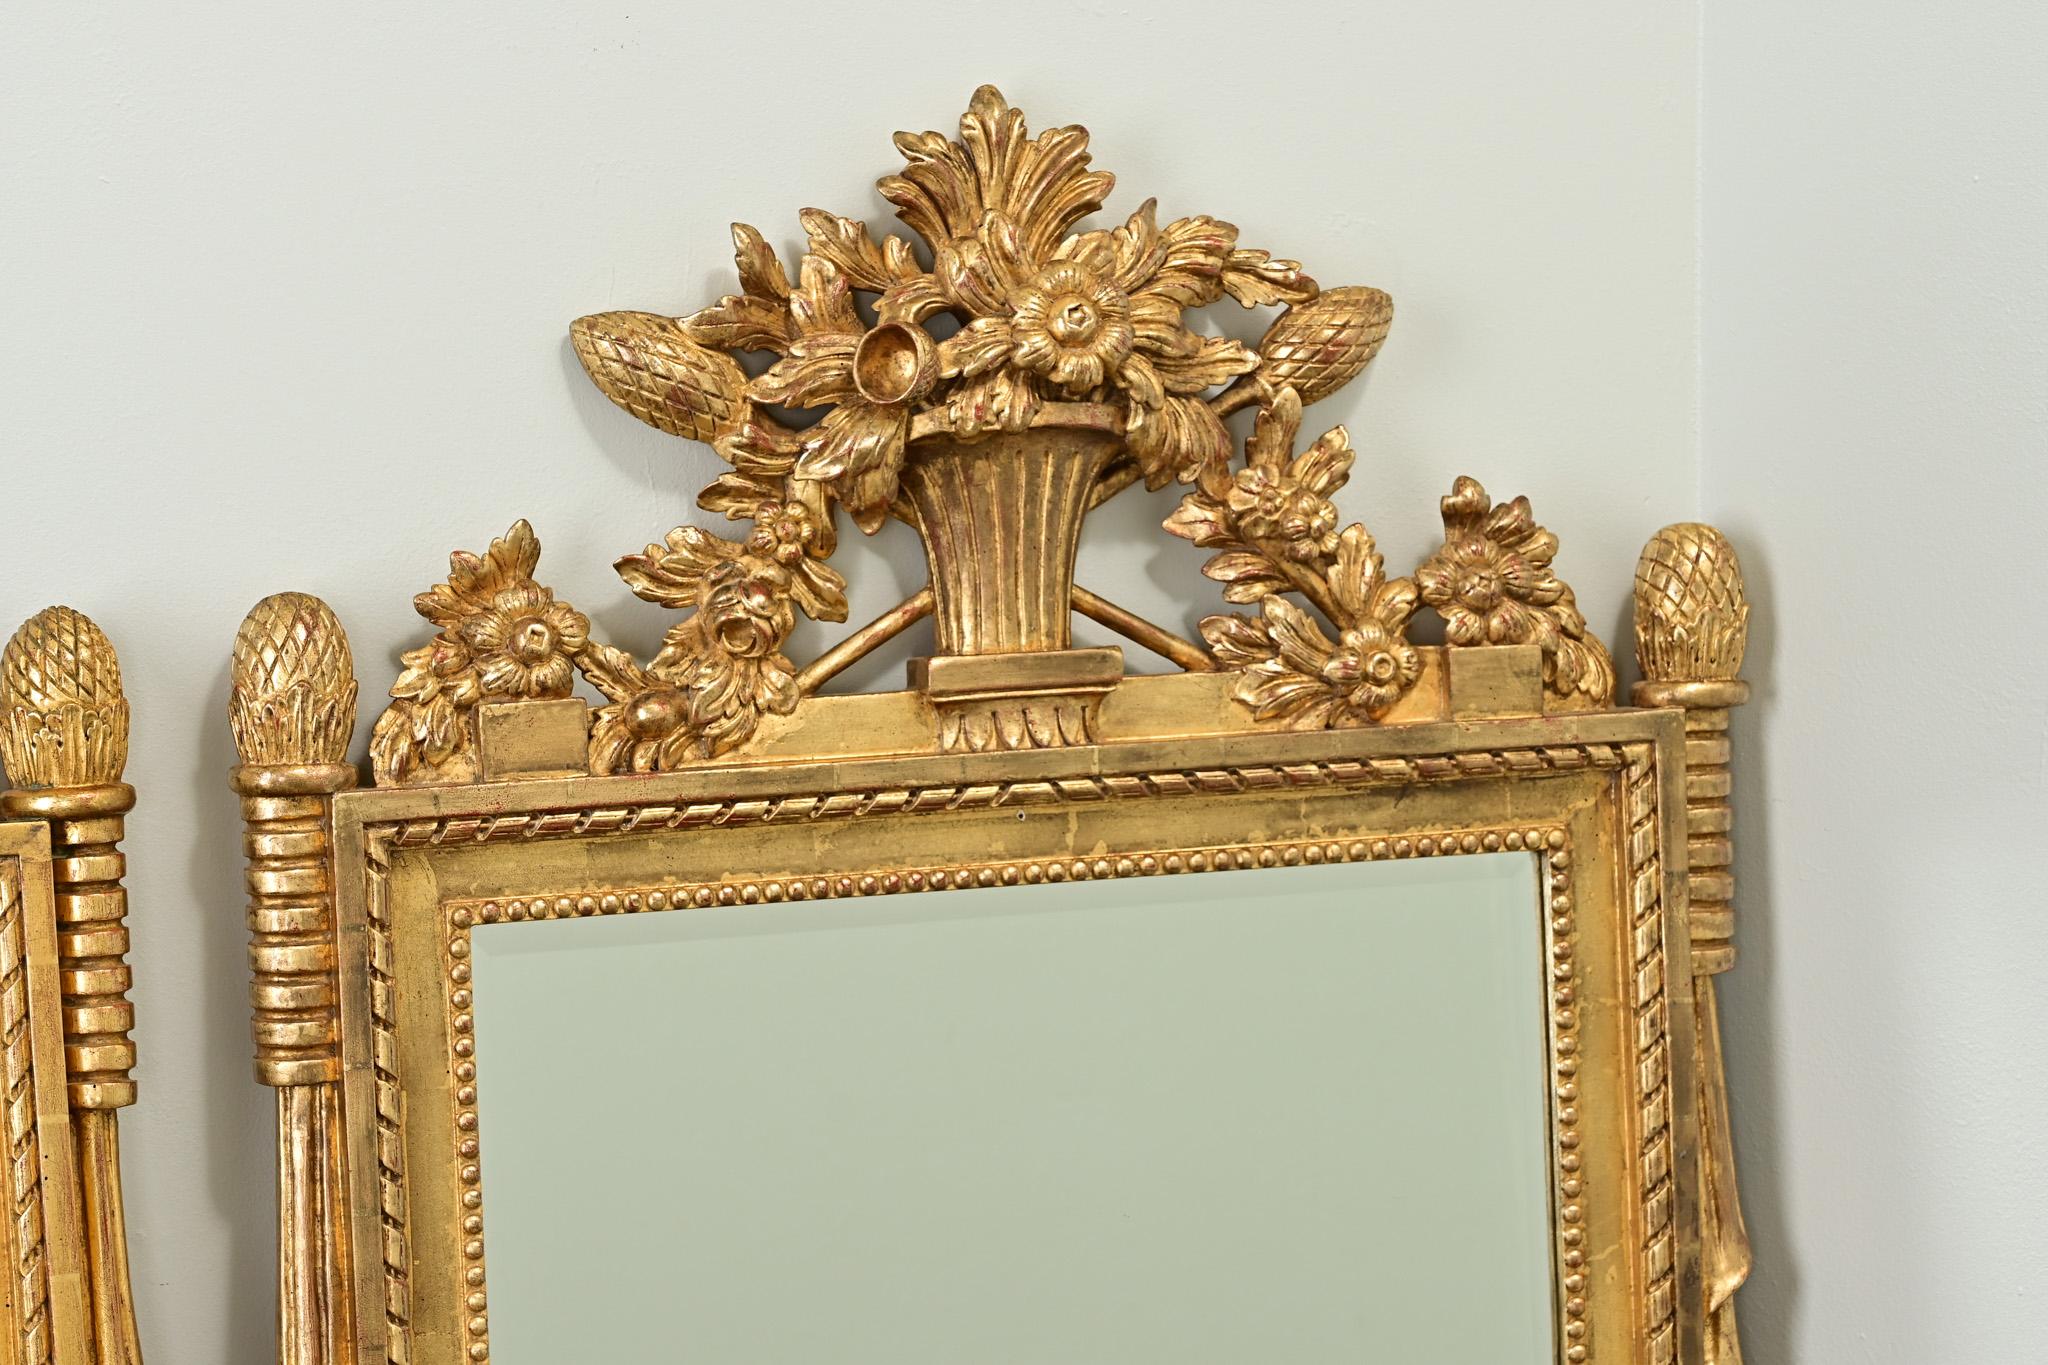 Une impressionnante paire de reproductions de miroirs dorés de Belgique. Les cadres sont très décoratifs, avec des écussons représentant des paniers fleuris et du blé. Les nouvelles plaques de miroir biseautées sont entourées de parcloses et autres